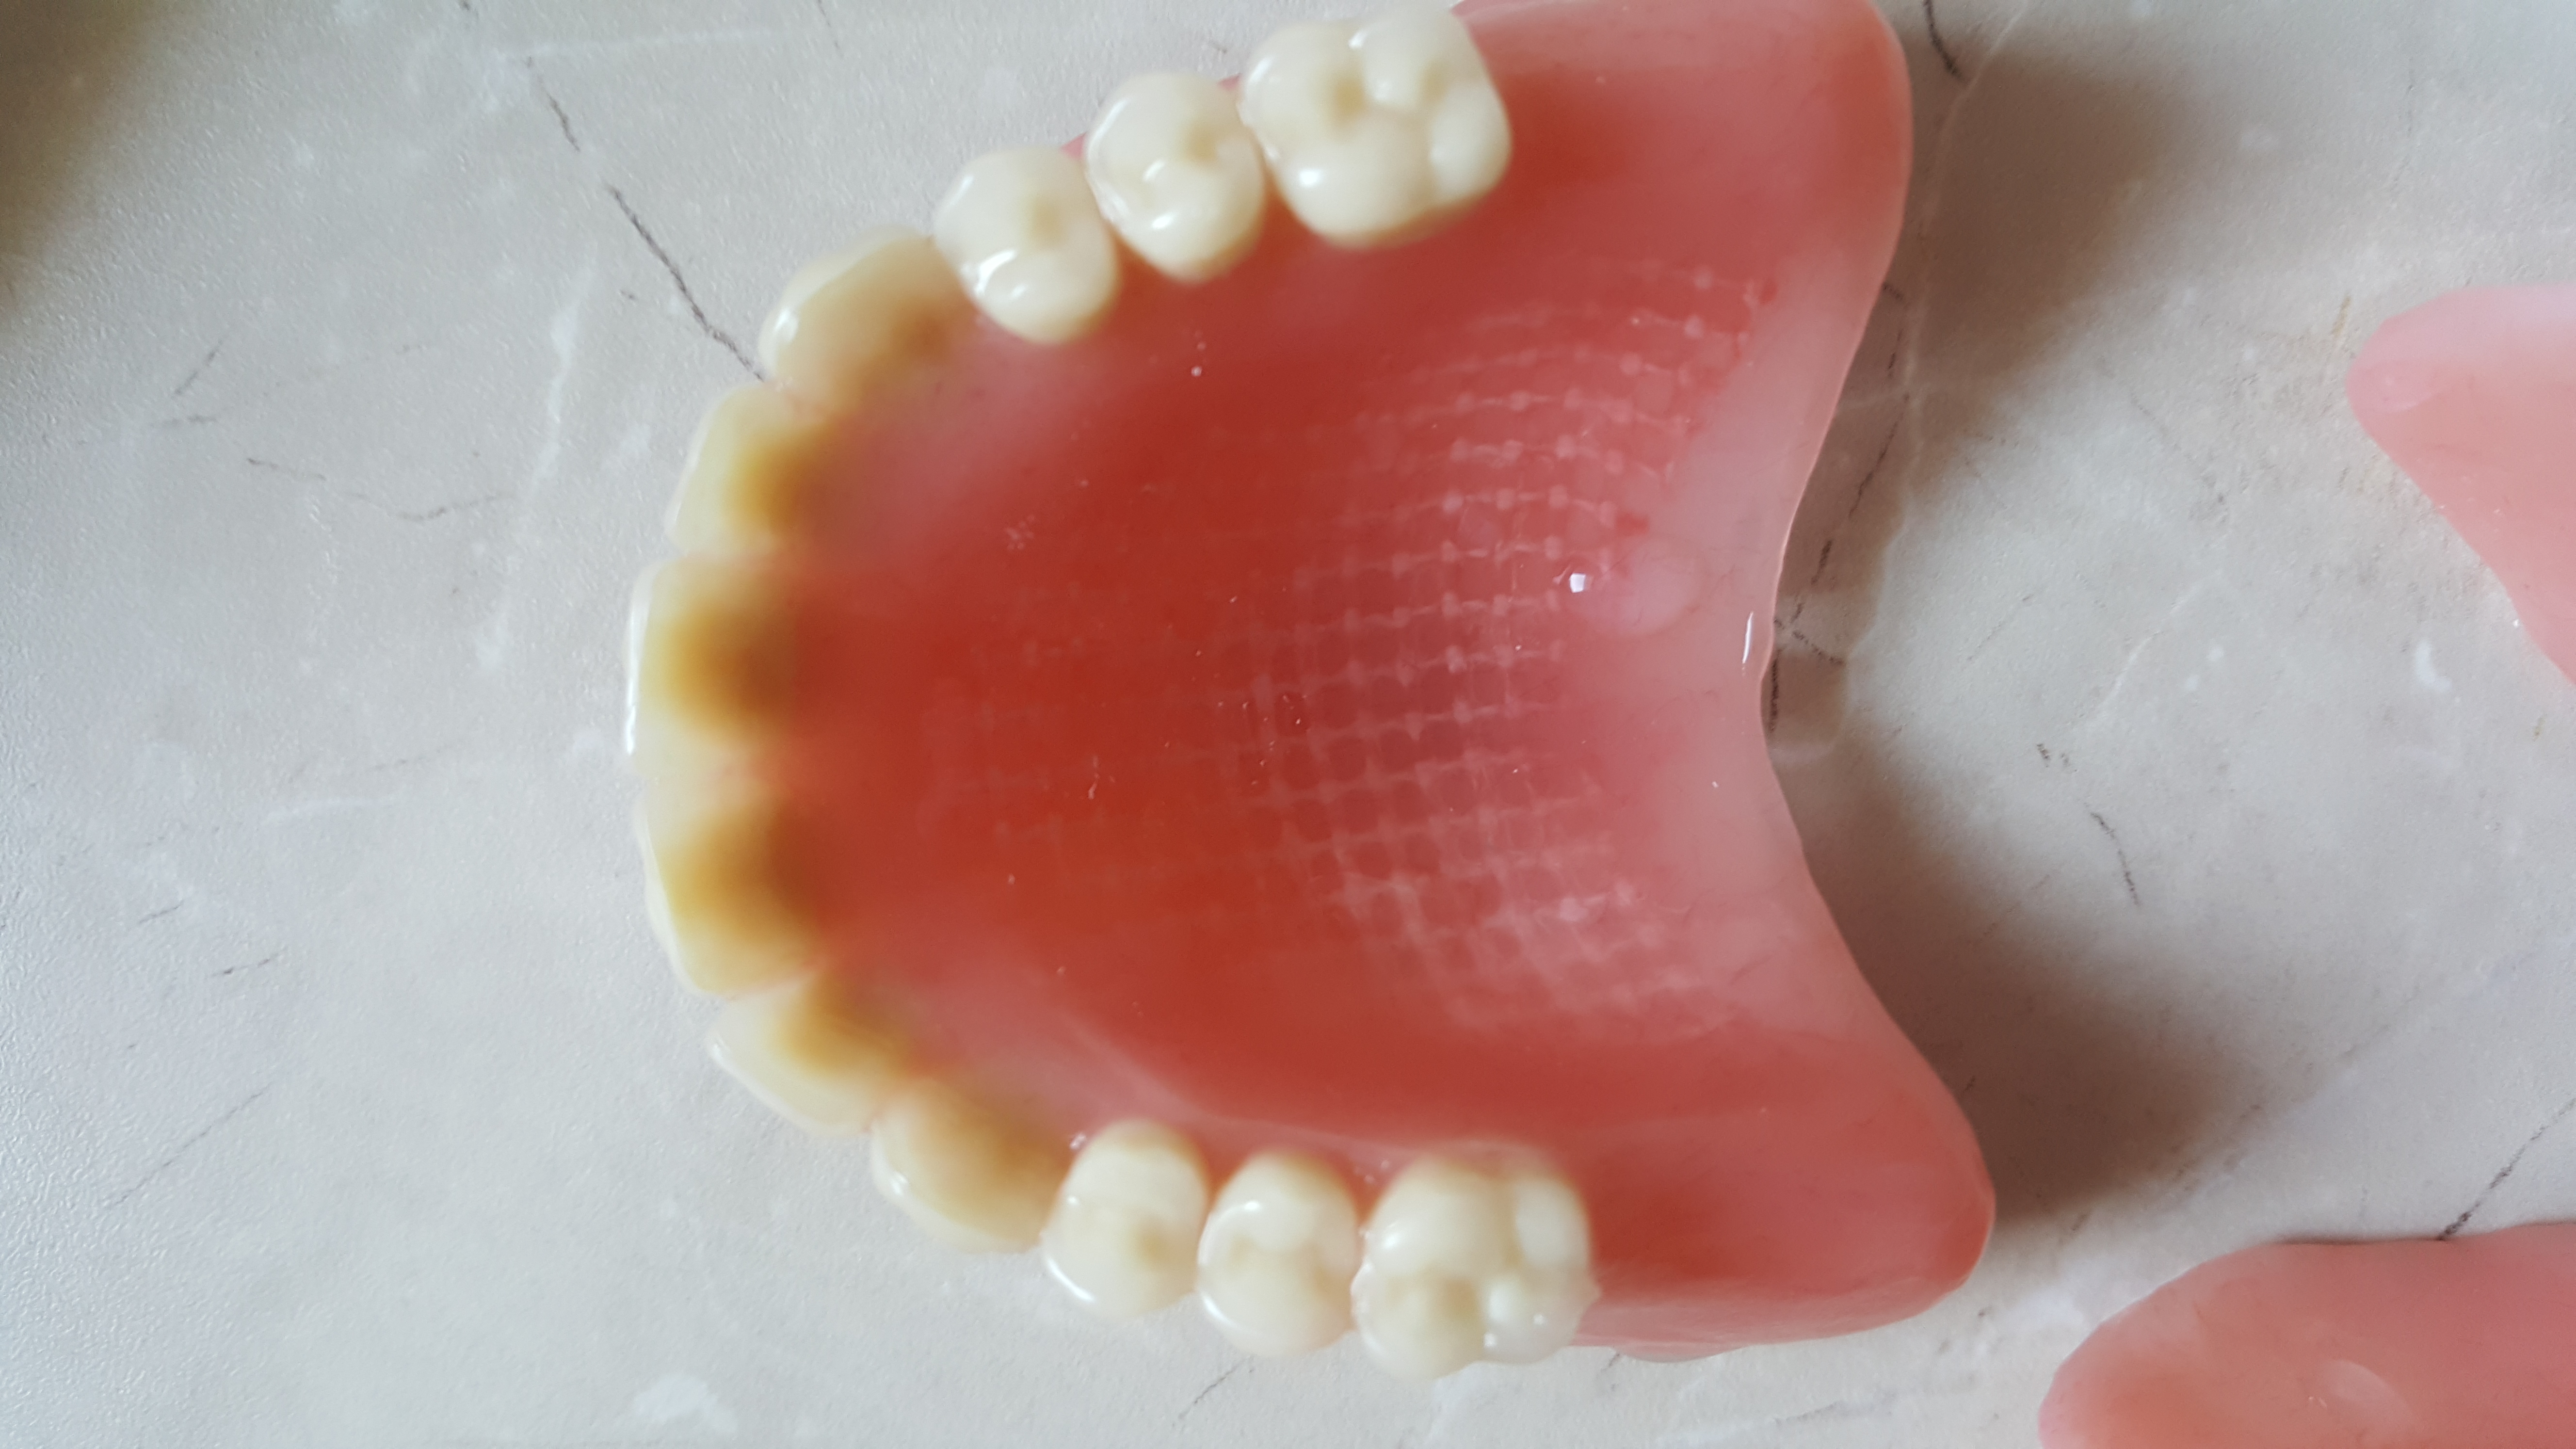 3. Vyztužená zubní náhrada; se svolením Simona Langrana, Irsko